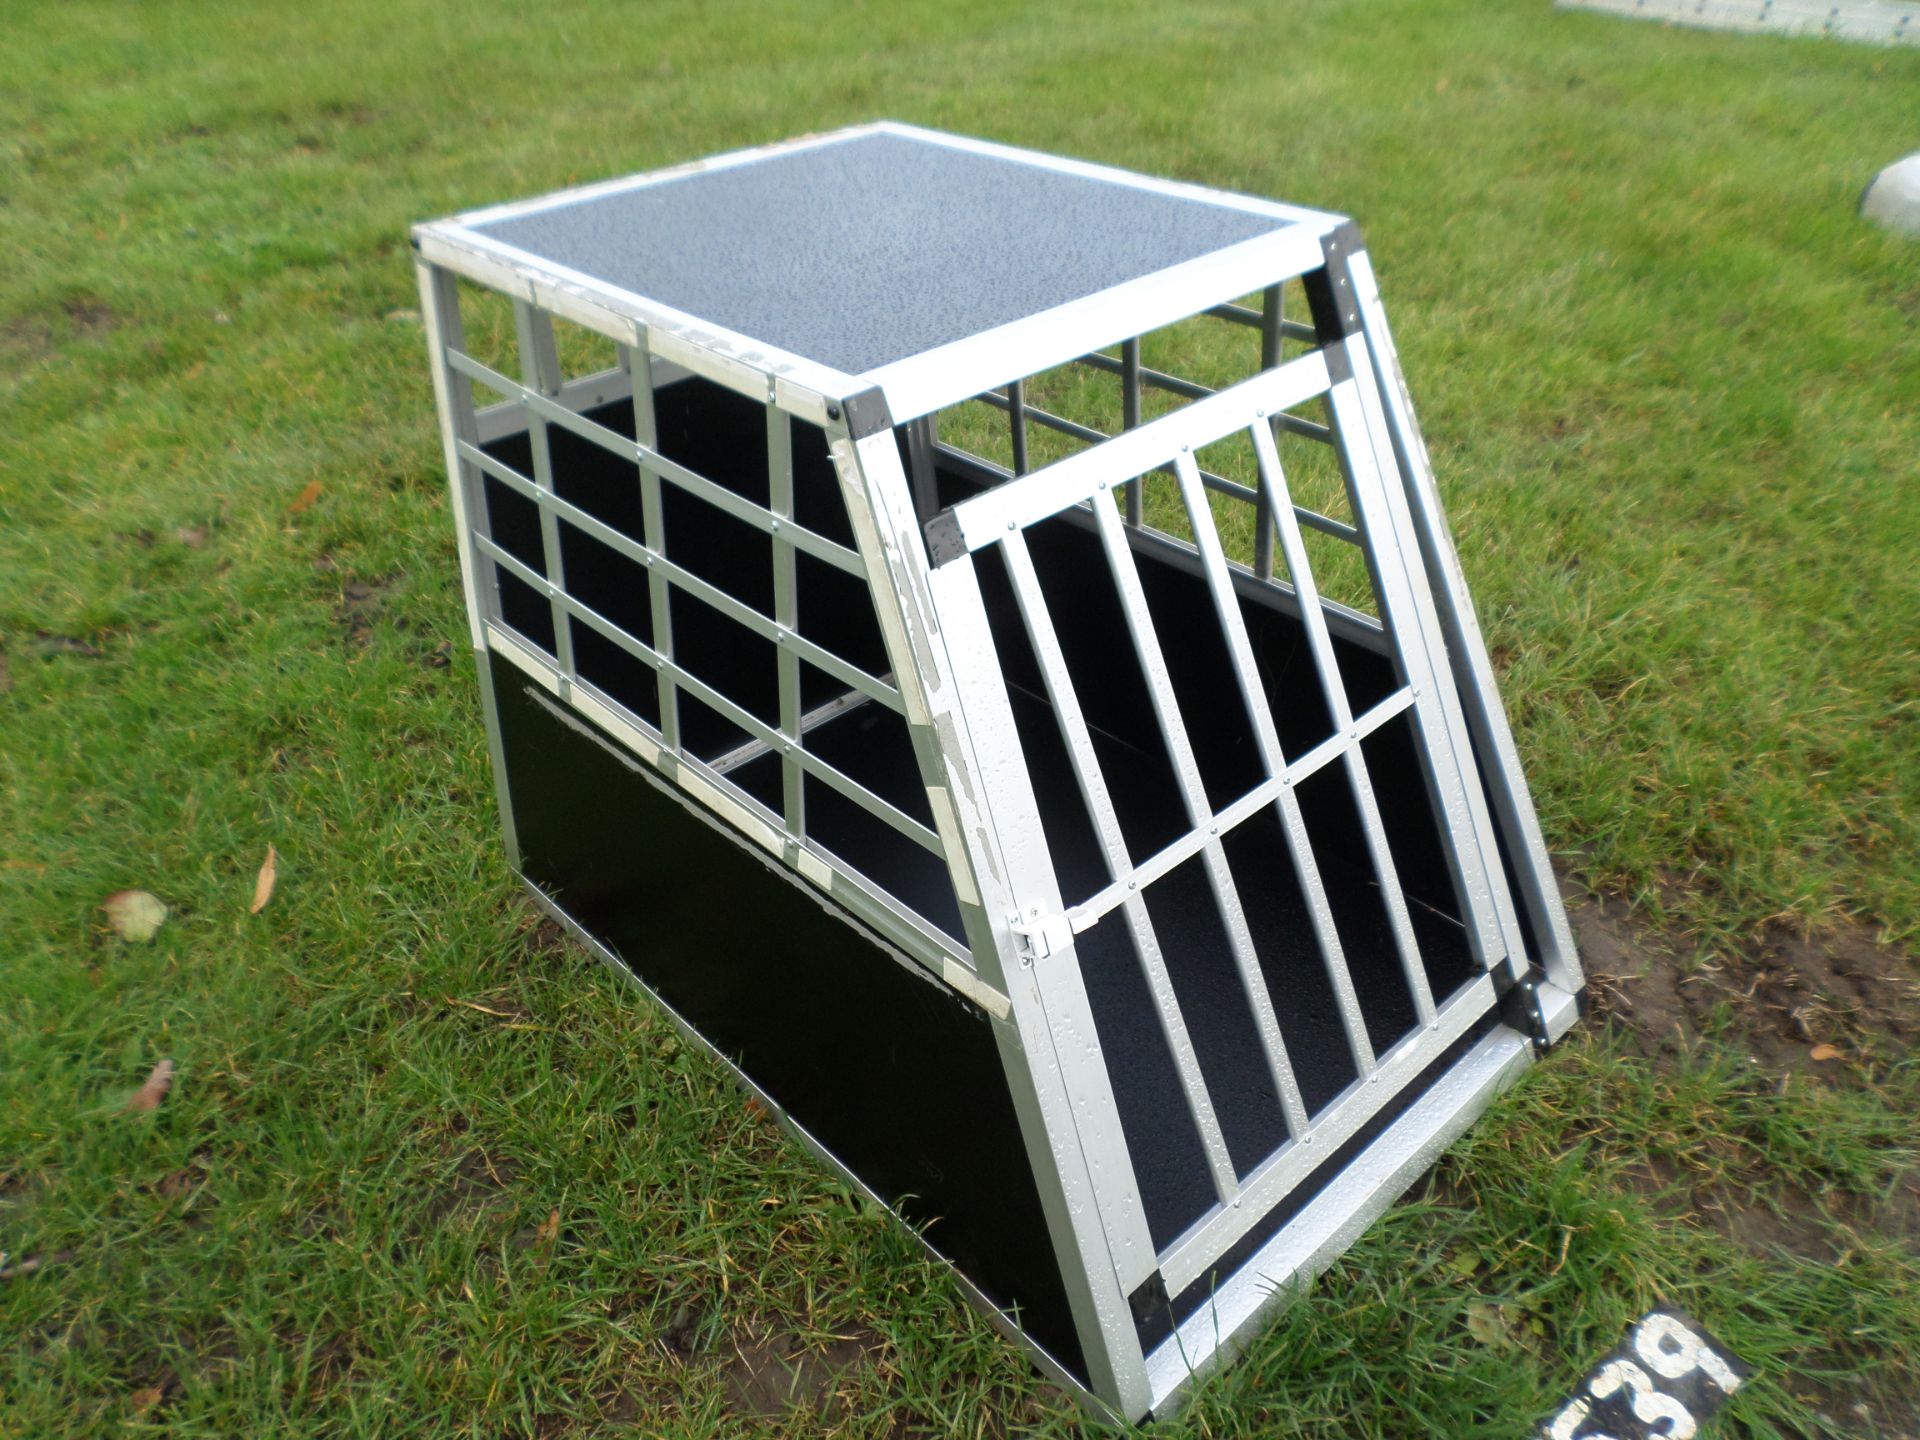 Large dog transport cage NO VAT, 70cm high, 60cm wide, 90cm front to back at the bottom